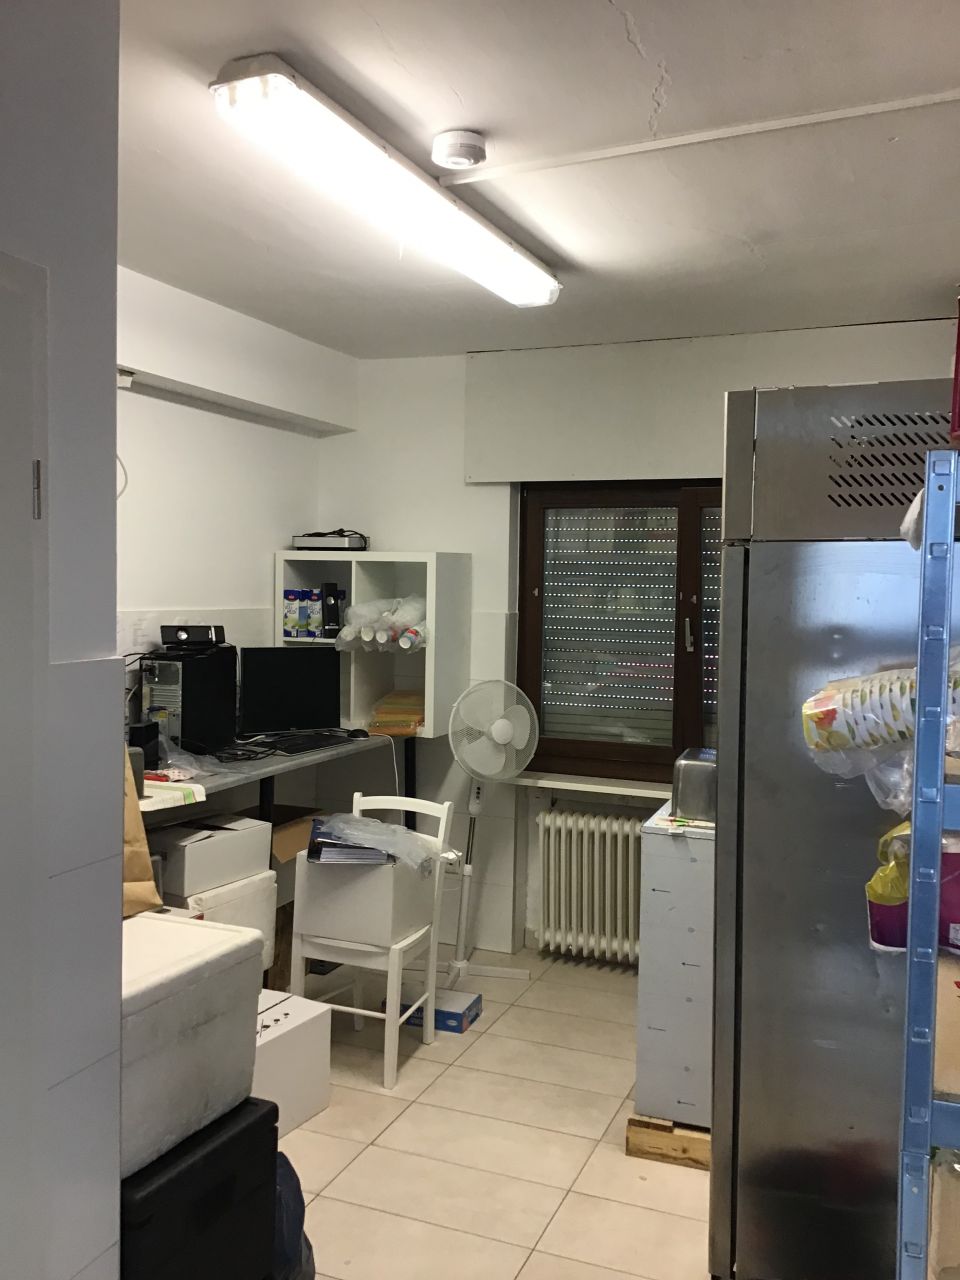 Separater Raum - Küche